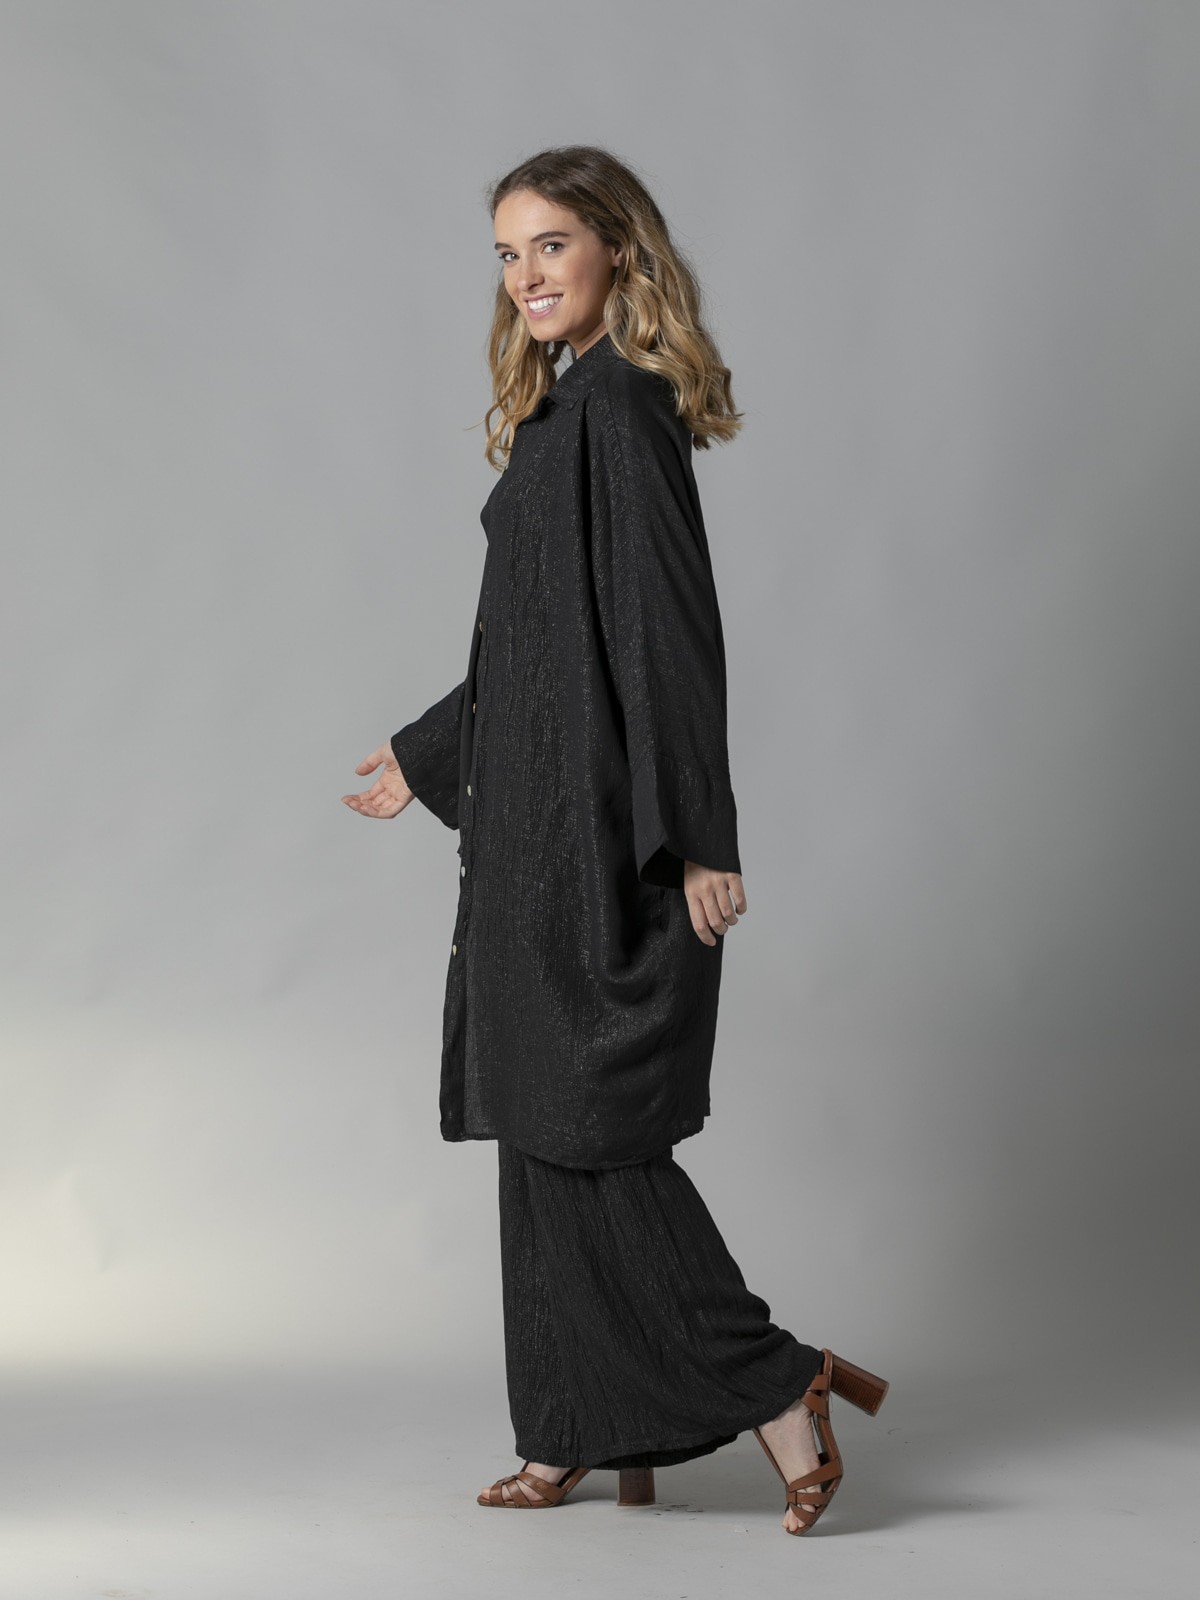 Camisola oversize tejido trendy Negro